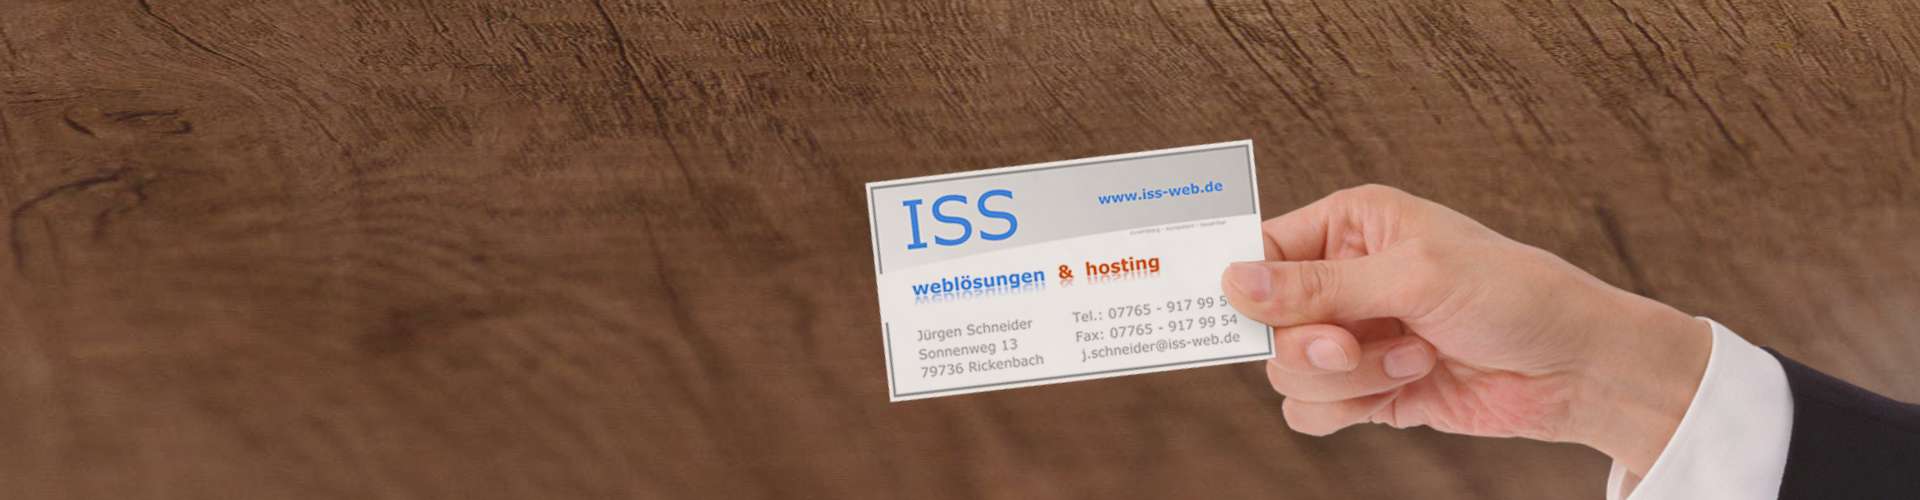 Referenzen Einrichtungen | ISS - Internet Services | websites, hosting & digital marketing